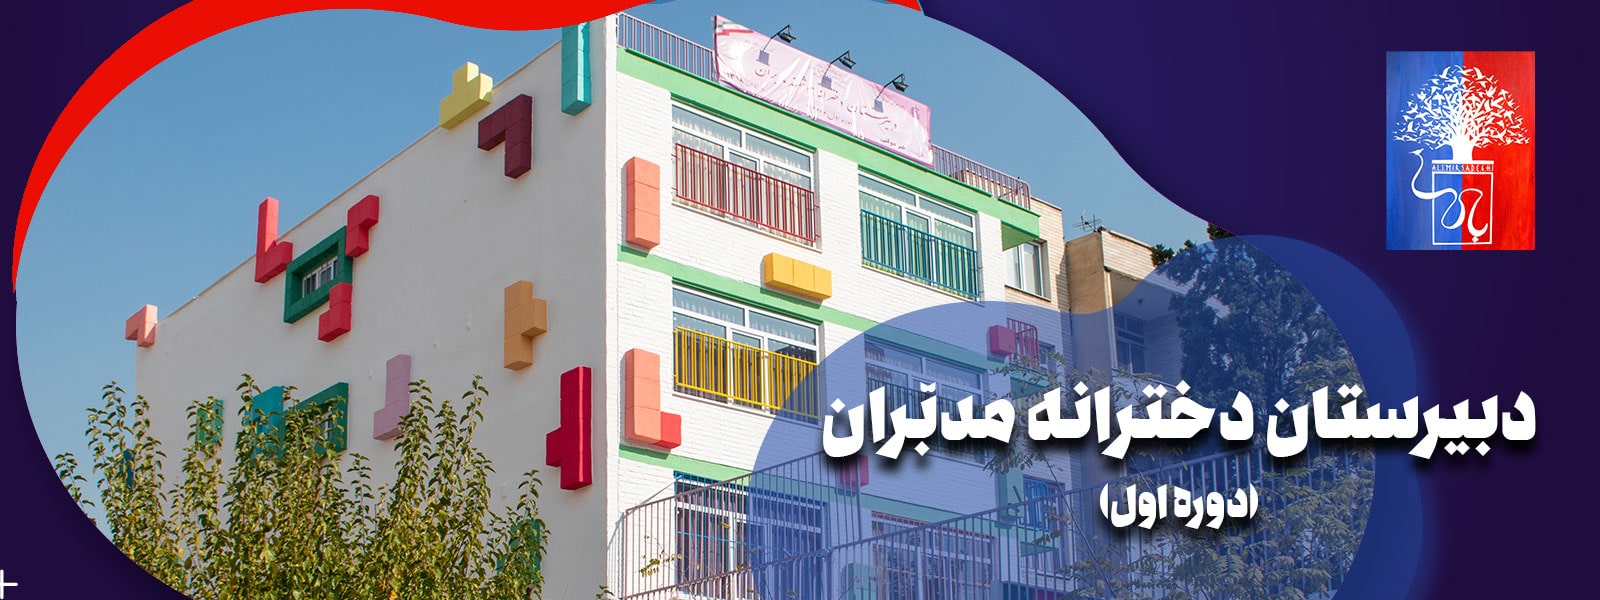 بهترین مدرسه دوره اول دخترانه تهران